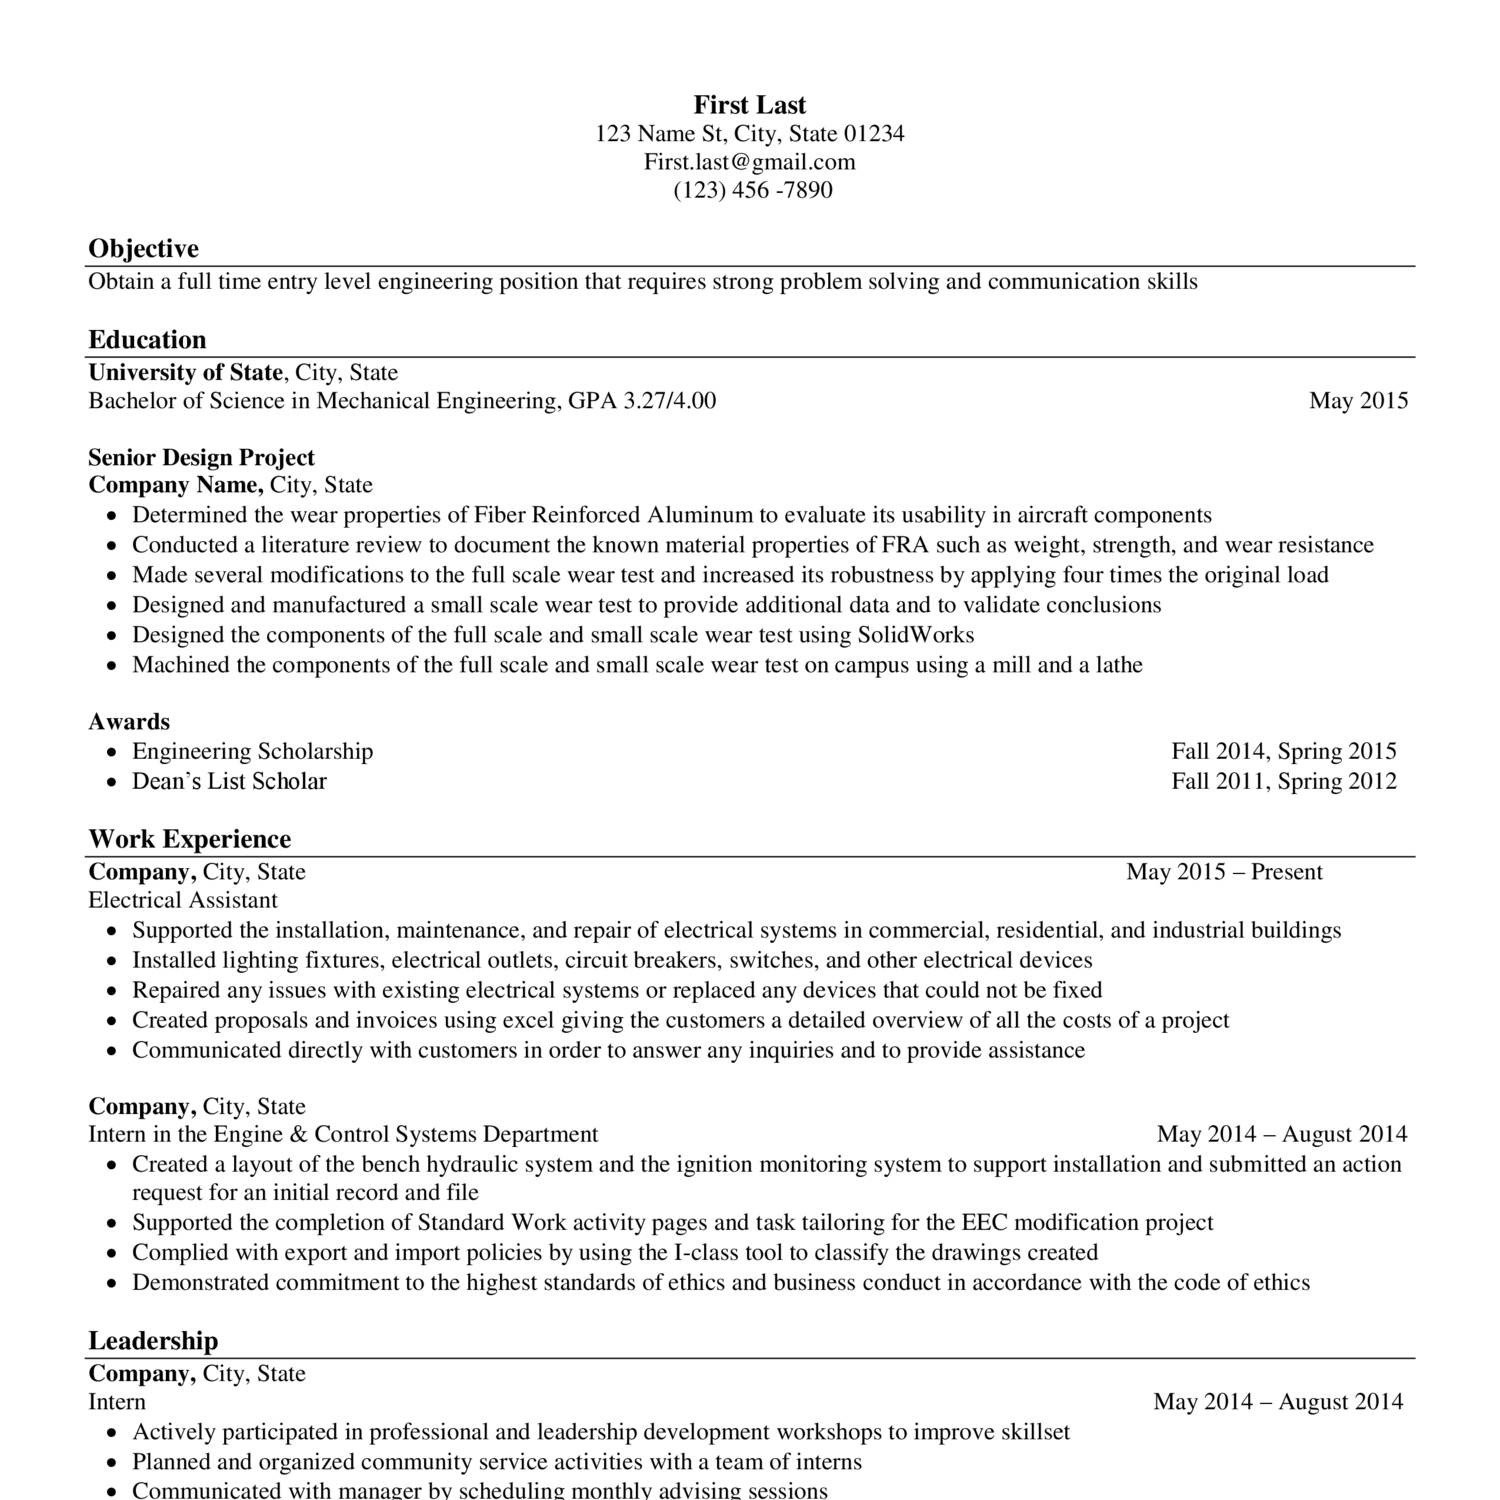 Fake Resume.docx